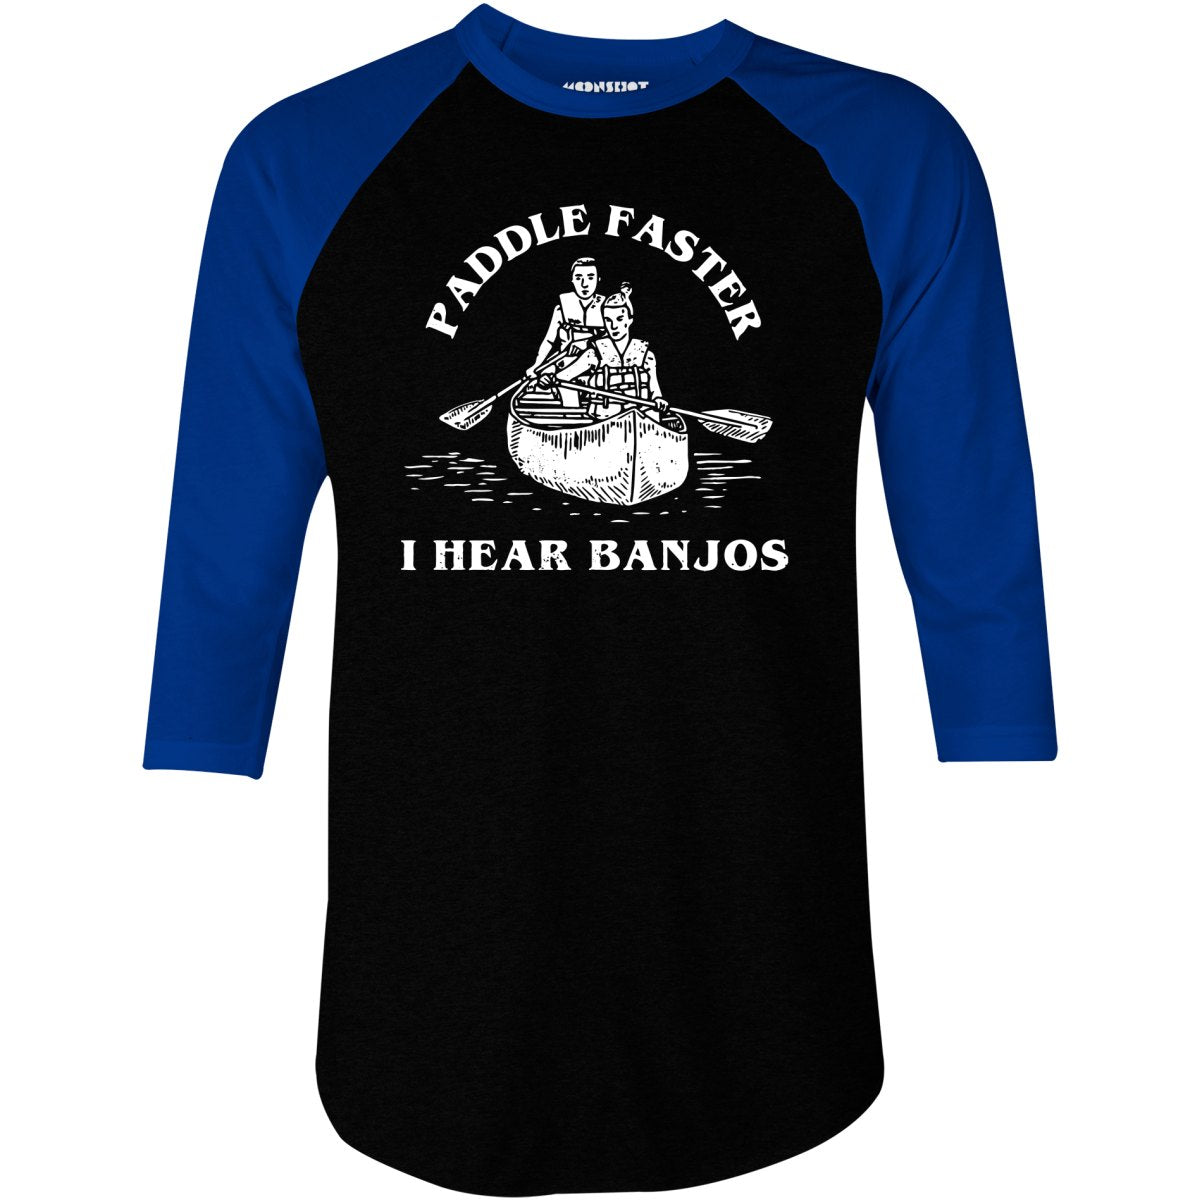 Paddle Faster I Hear Banjos - 3/4 Sleeve Raglan T-Shirt